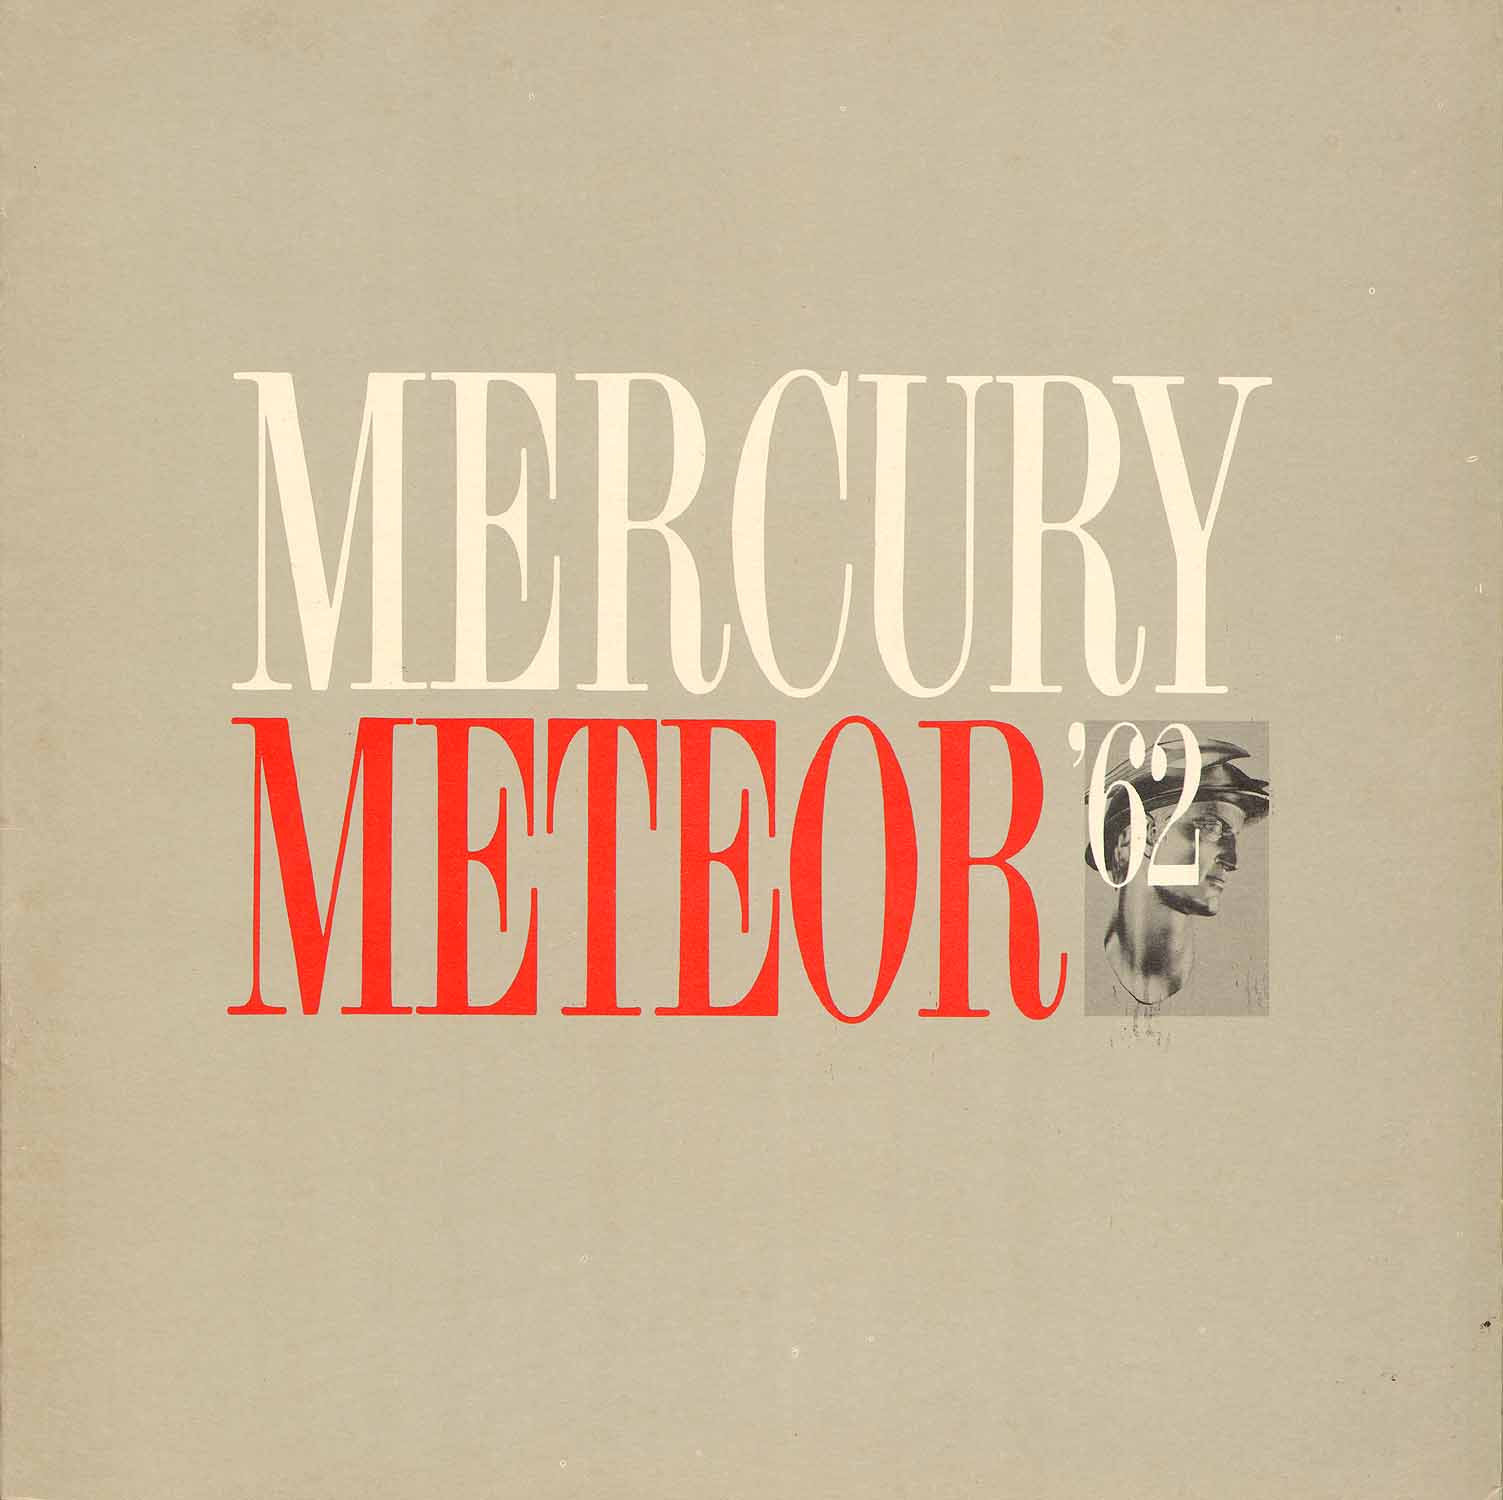 n_1962 Mercury Meteor Prestige-01.jpg